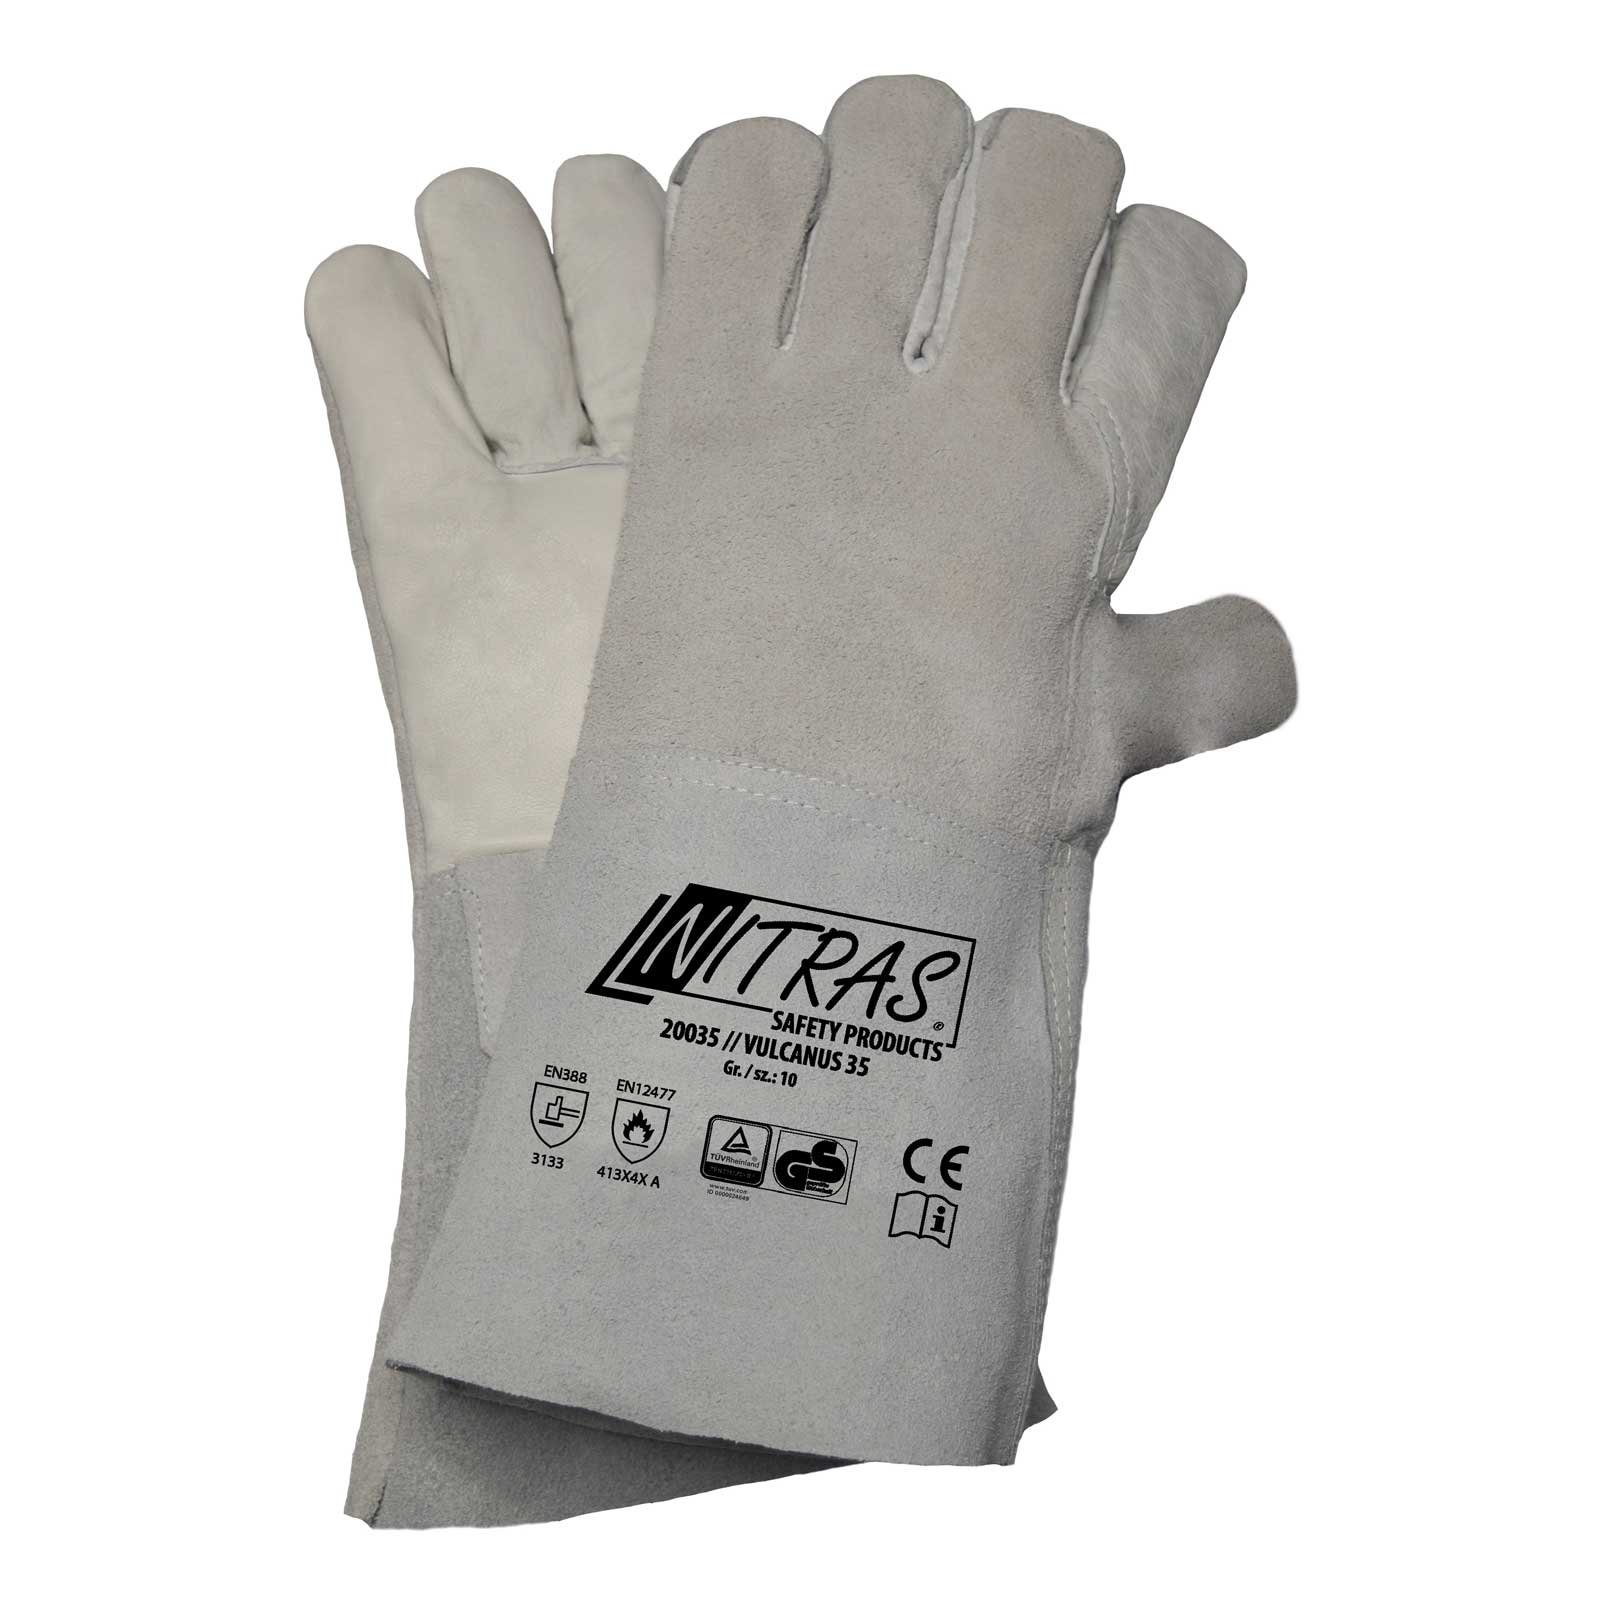 Nitras Hitzeschutzhandschuhe NITRAS 20035 Vulcanus Schweisserhandschuhe - 5-Finger Handschuhe